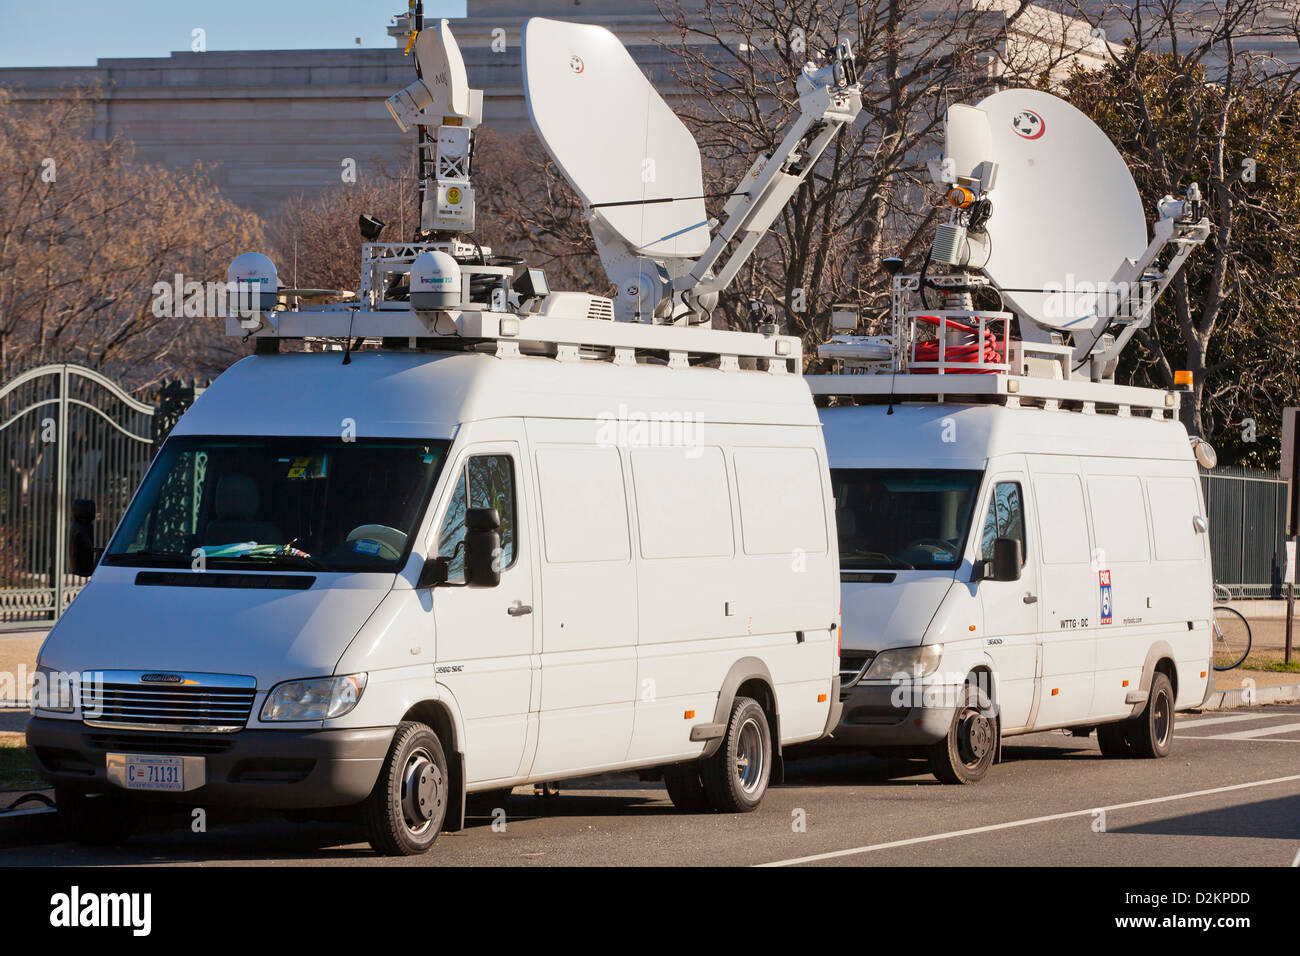 Live news TV satellite trucks - USA Stock Photo